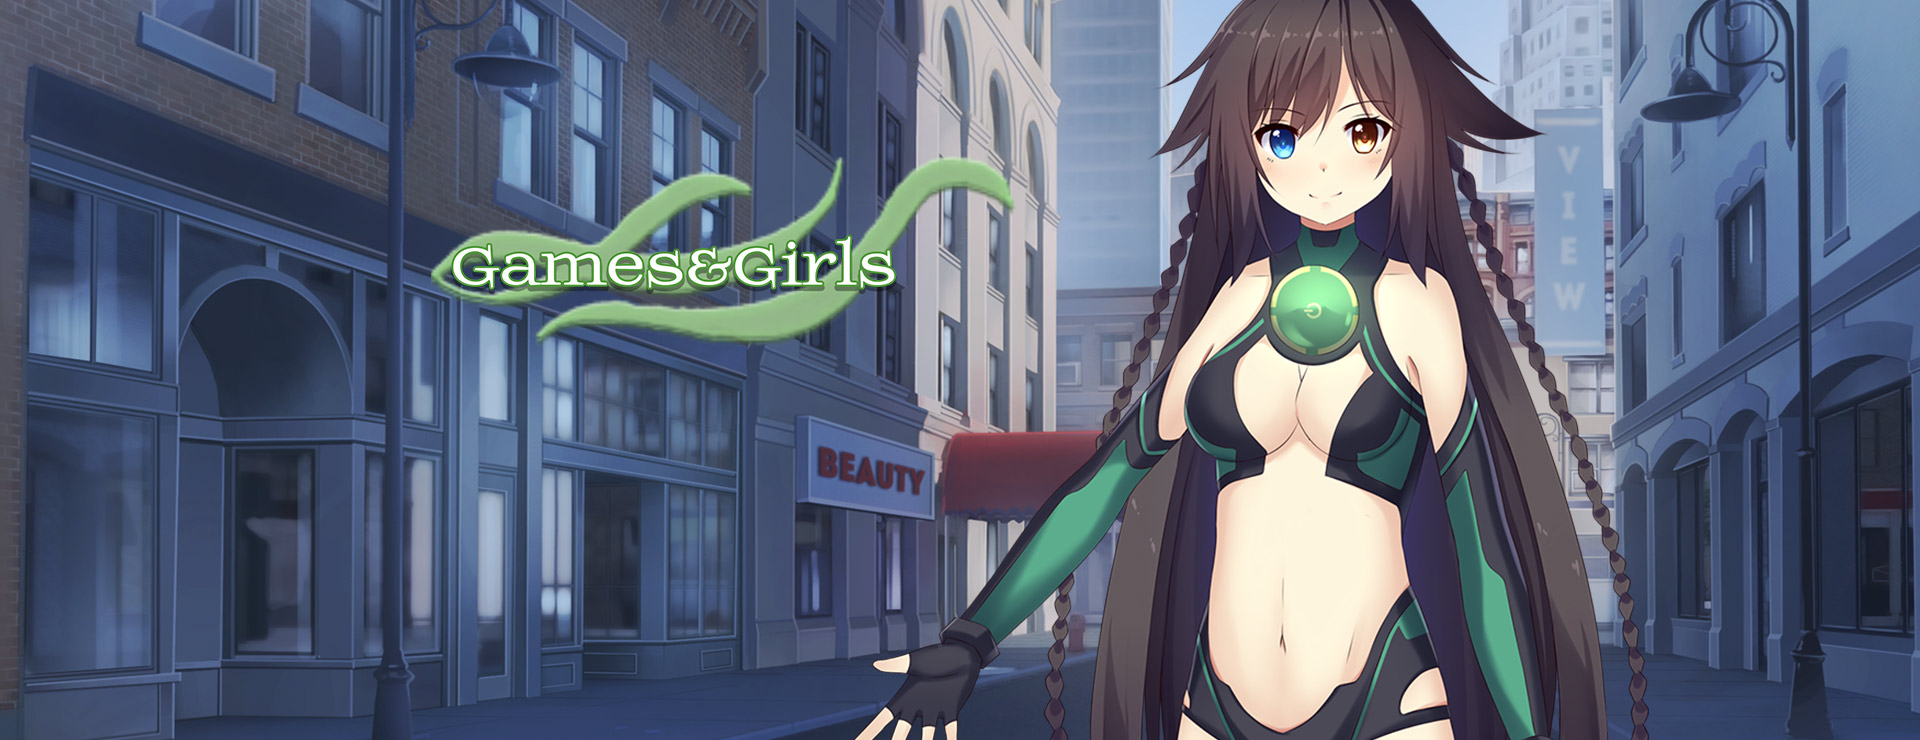 Games&Girls - Japanisches Adventure Spiel